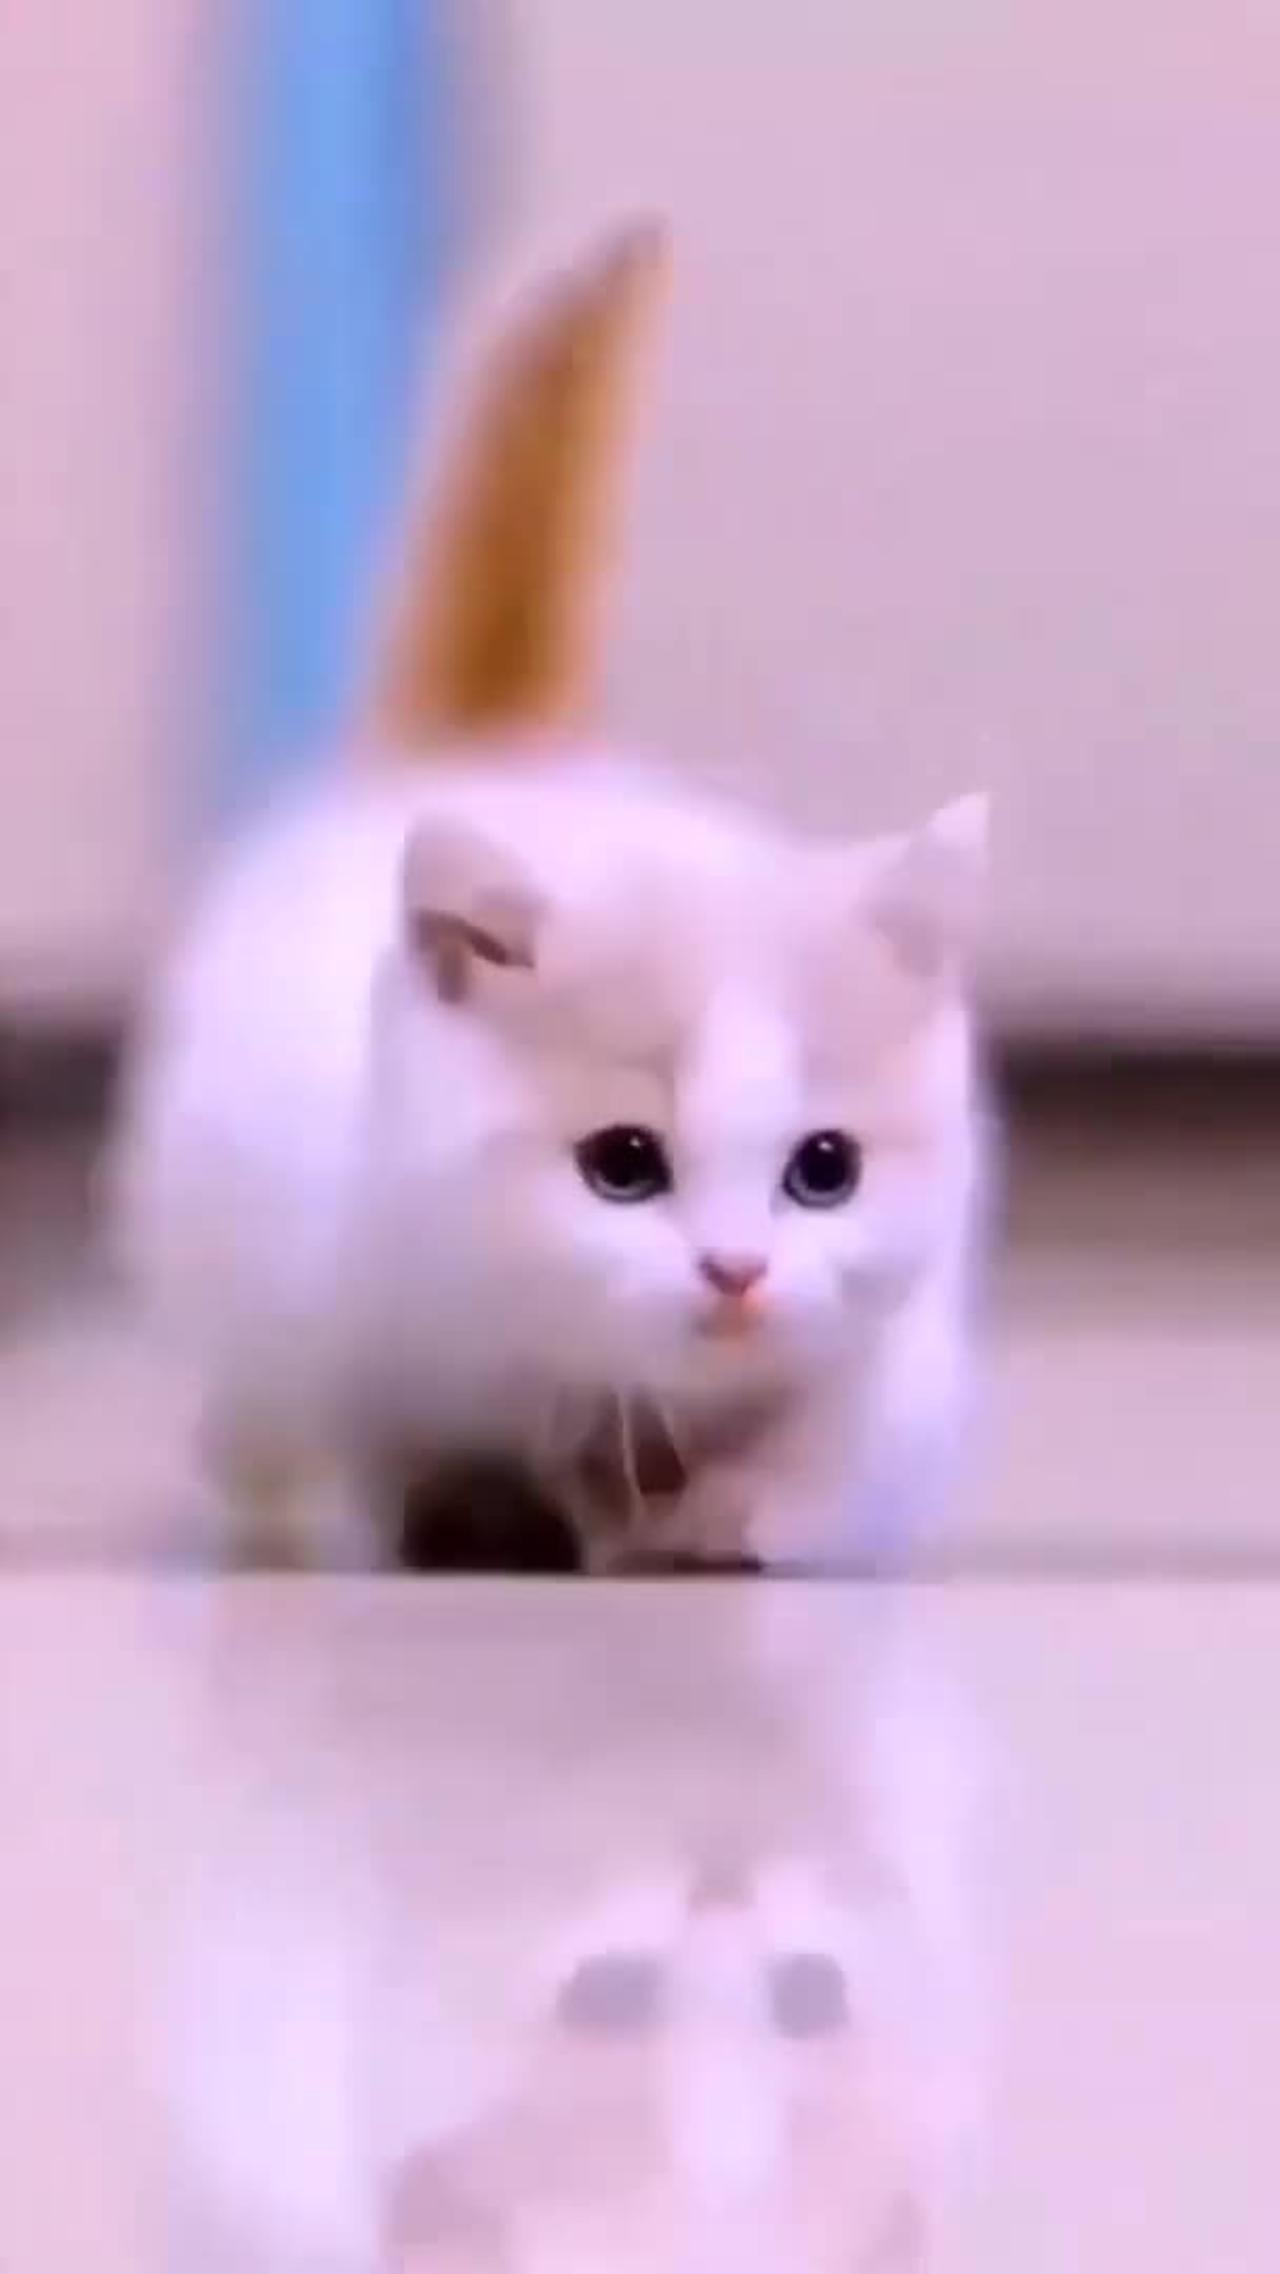 Funny cat video # Cute Cat